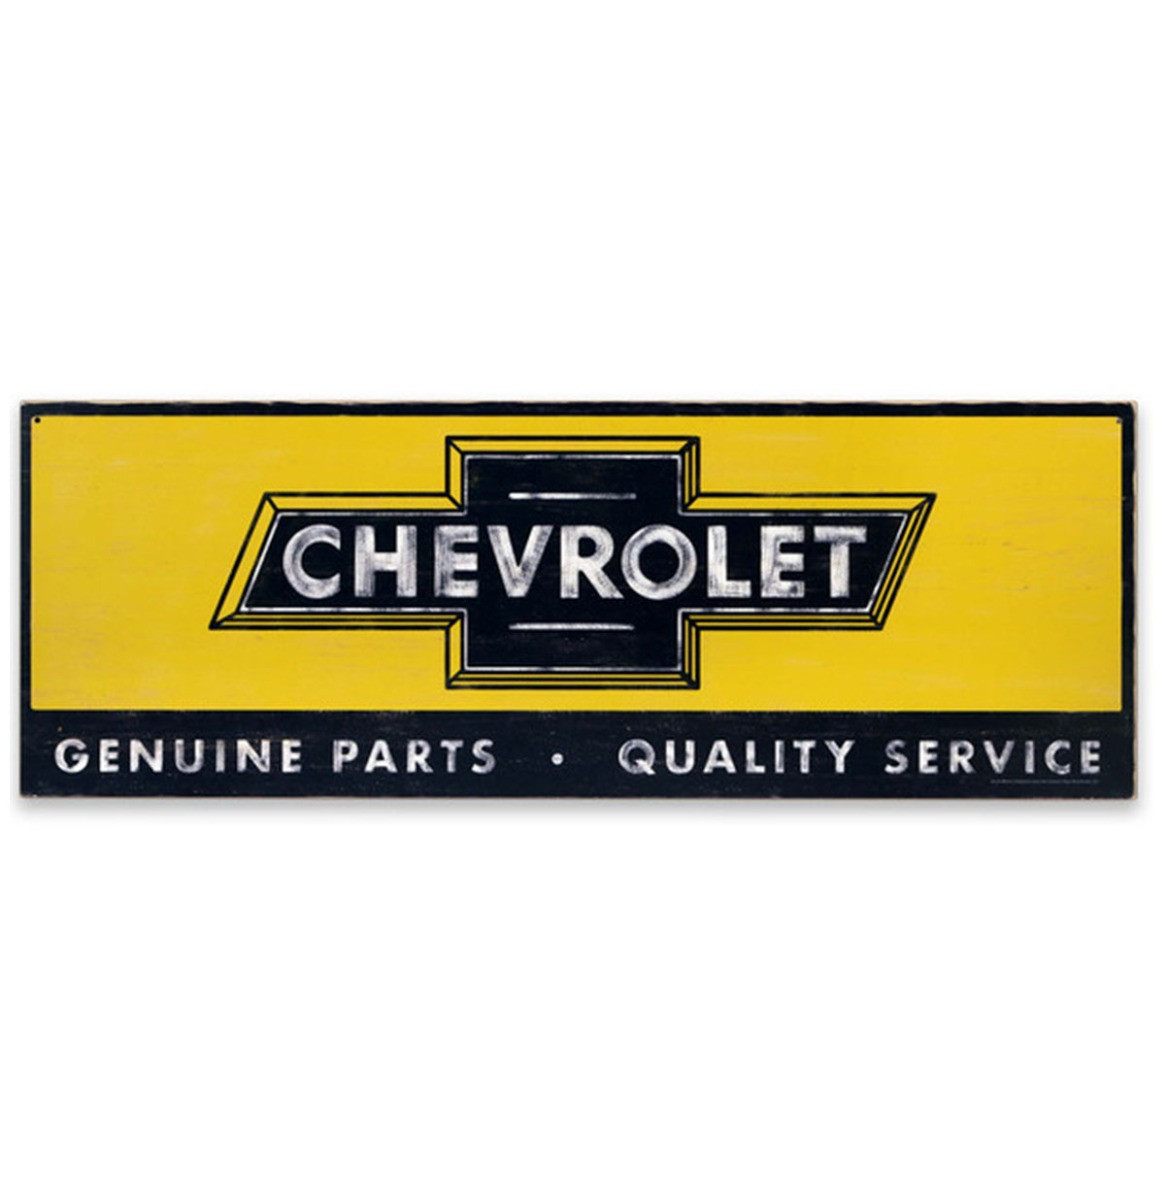 Chevrolet Parts & Service Houten Bord - 91 x 32cm